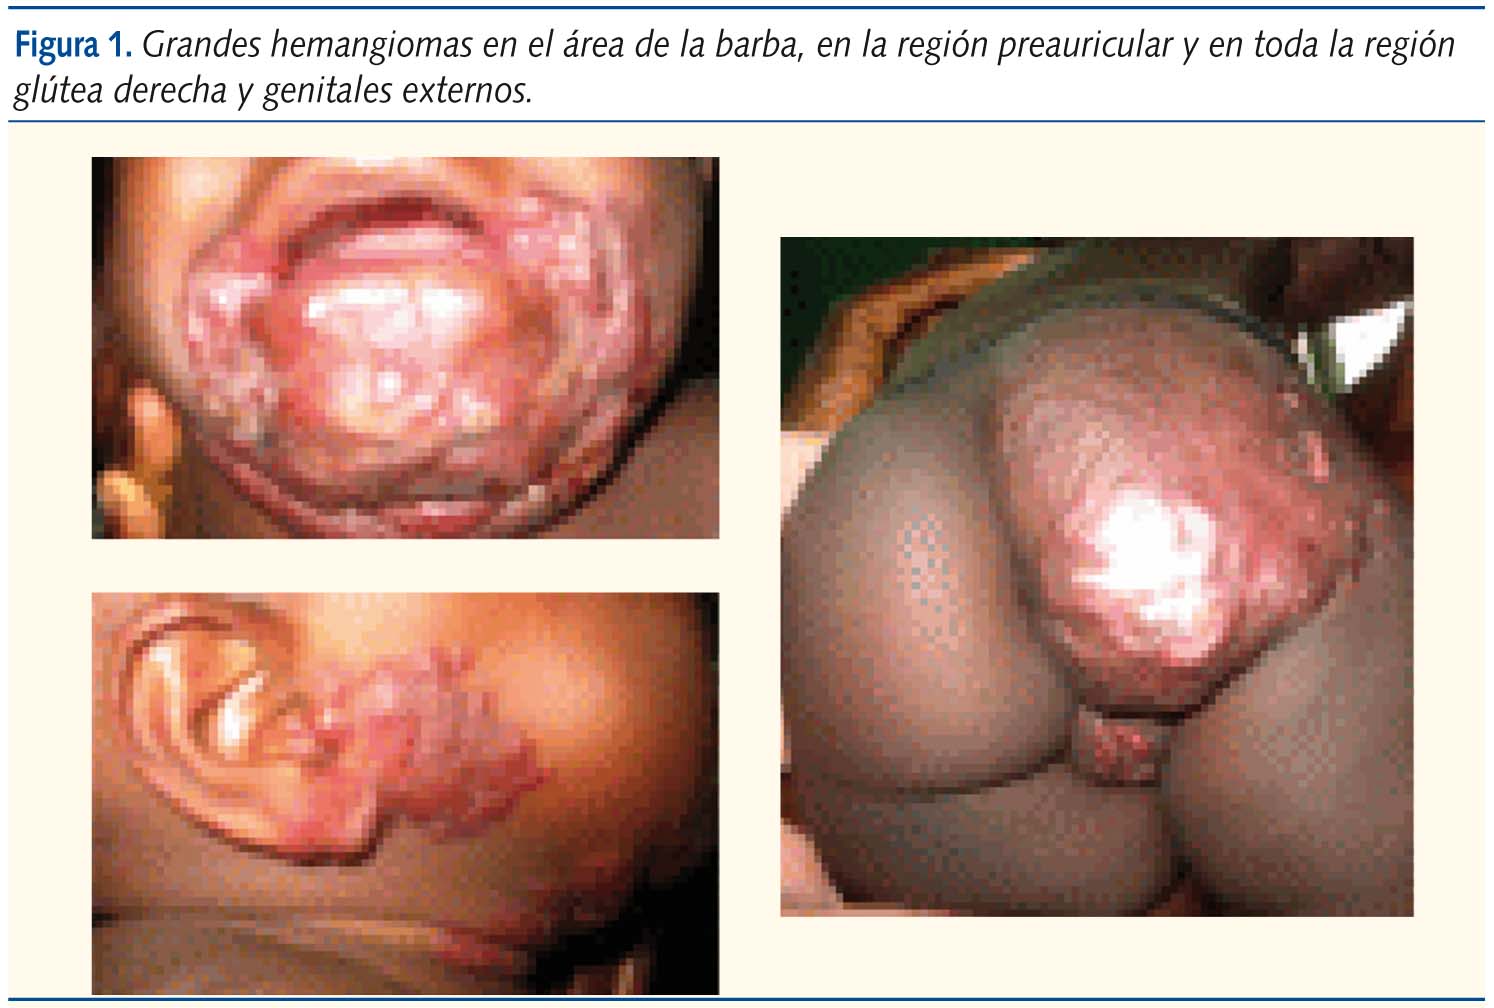 Figura 1. Grandes hemangiomas en el área de la barba, en la región preauricular y en toda la región glútea derecha y genitales externos.